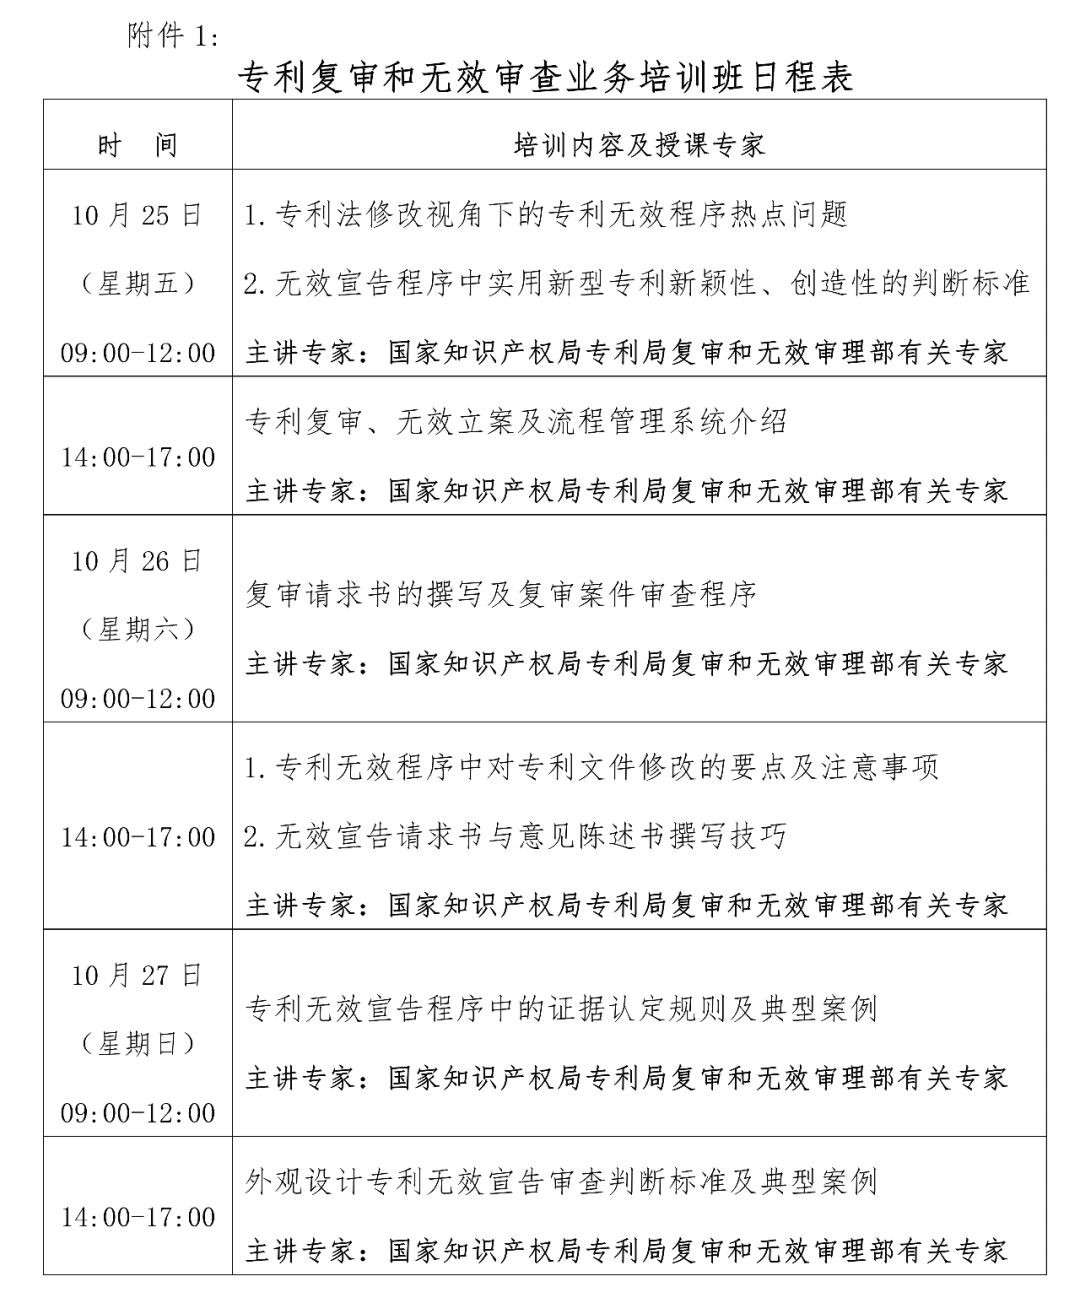 报名丨专利复审和无效审查业务培训班「2019.10.25-27日上海市」